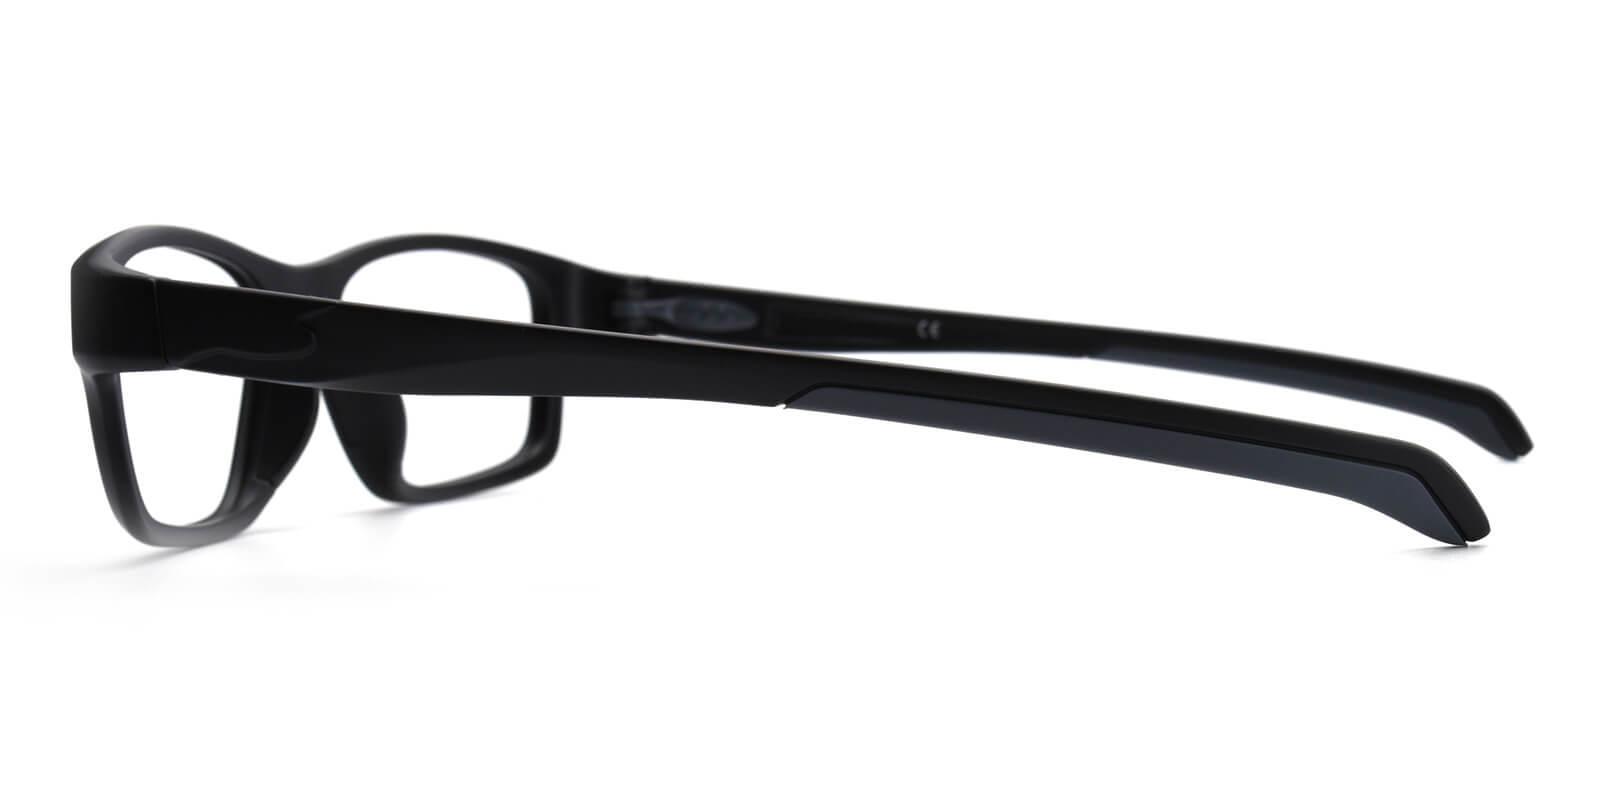 Socrates Black TR SportsGlasses , UniversalBridgeFit Frames from ABBE Glasses